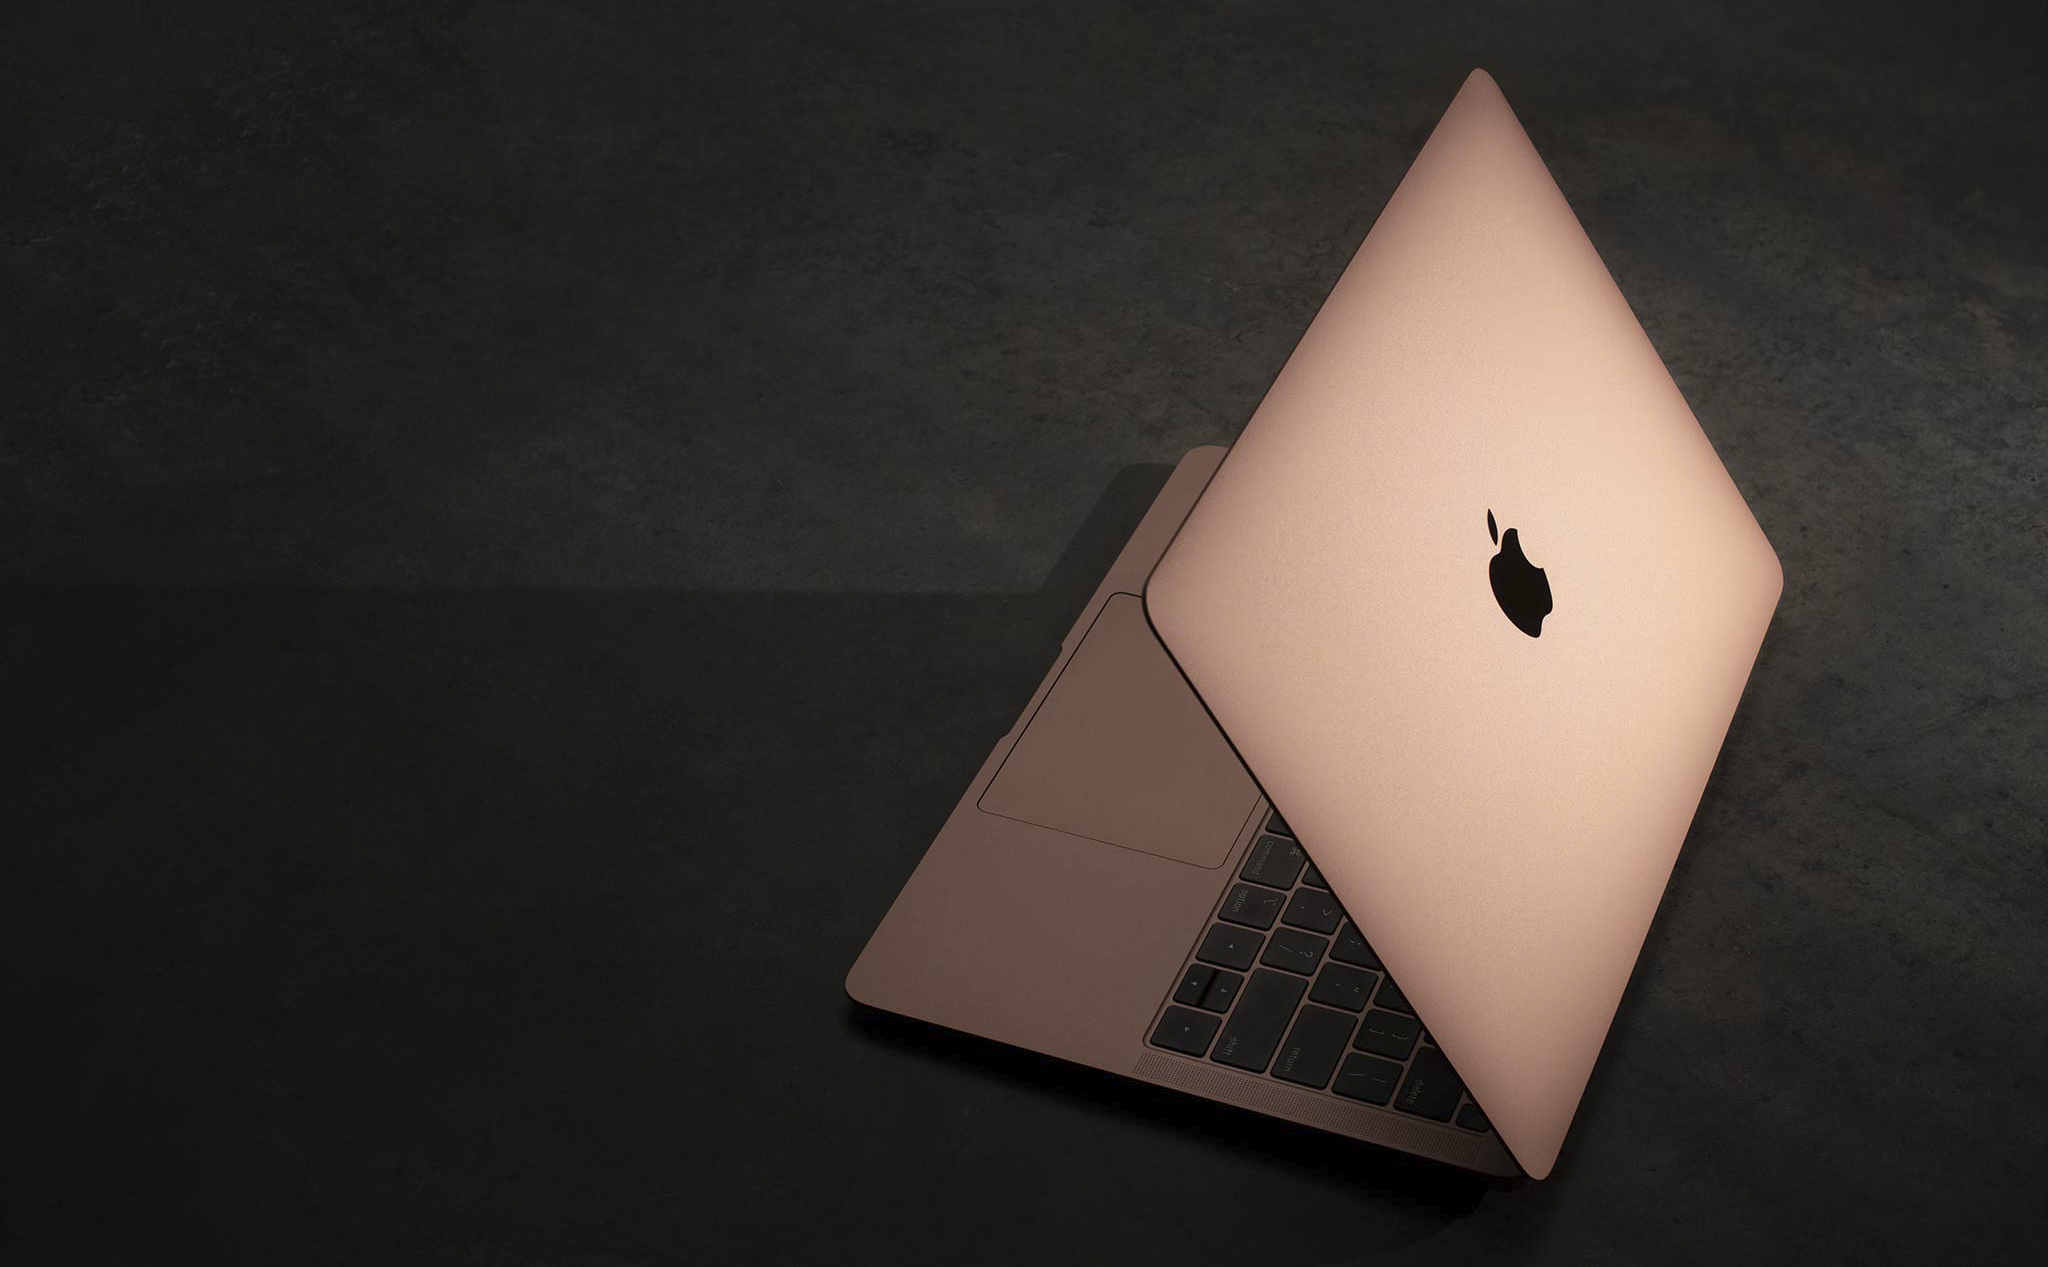 Trên tay Macbook Air 2018: màu vàng hồng đẹp sang, mỏng nhẹ hơn, màn hình đẹp, trackpad rộng hơn,...